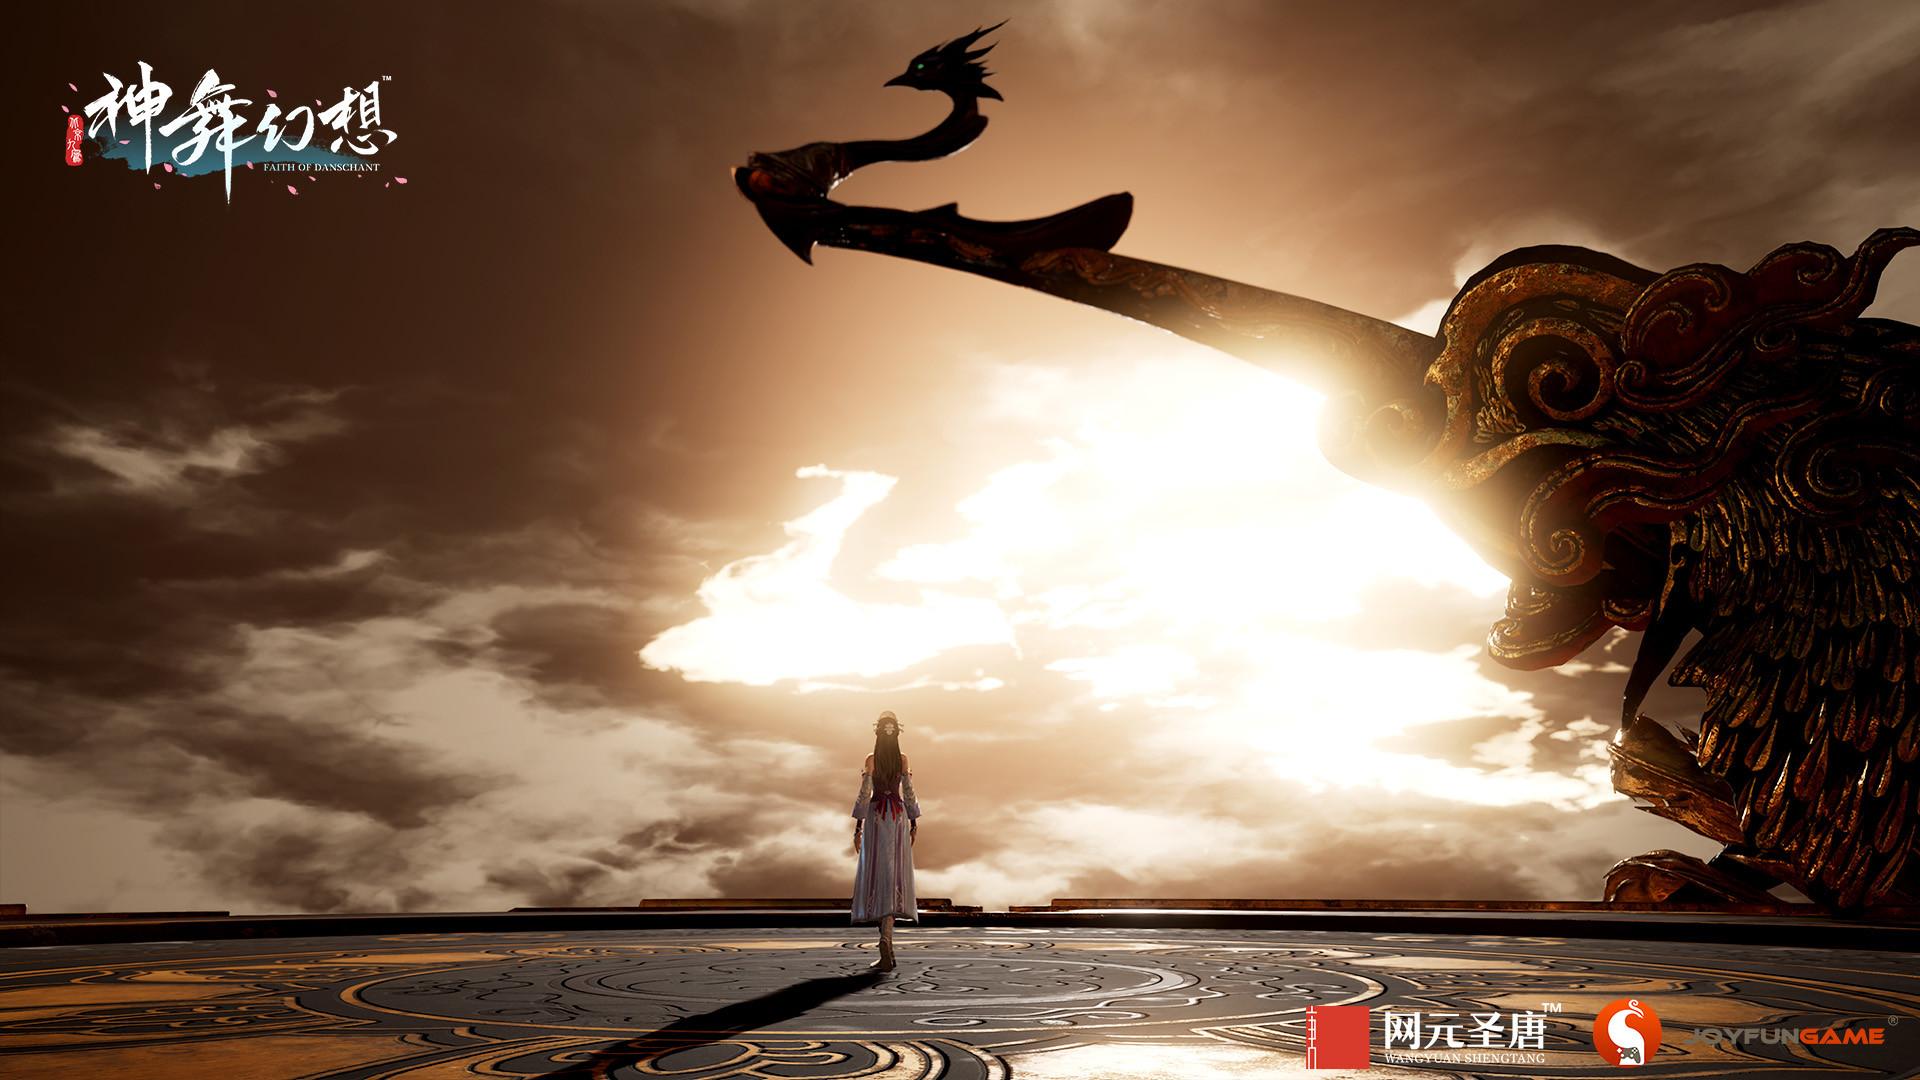 Screenshot №6 from game 神舞幻想 Faith of Danschant